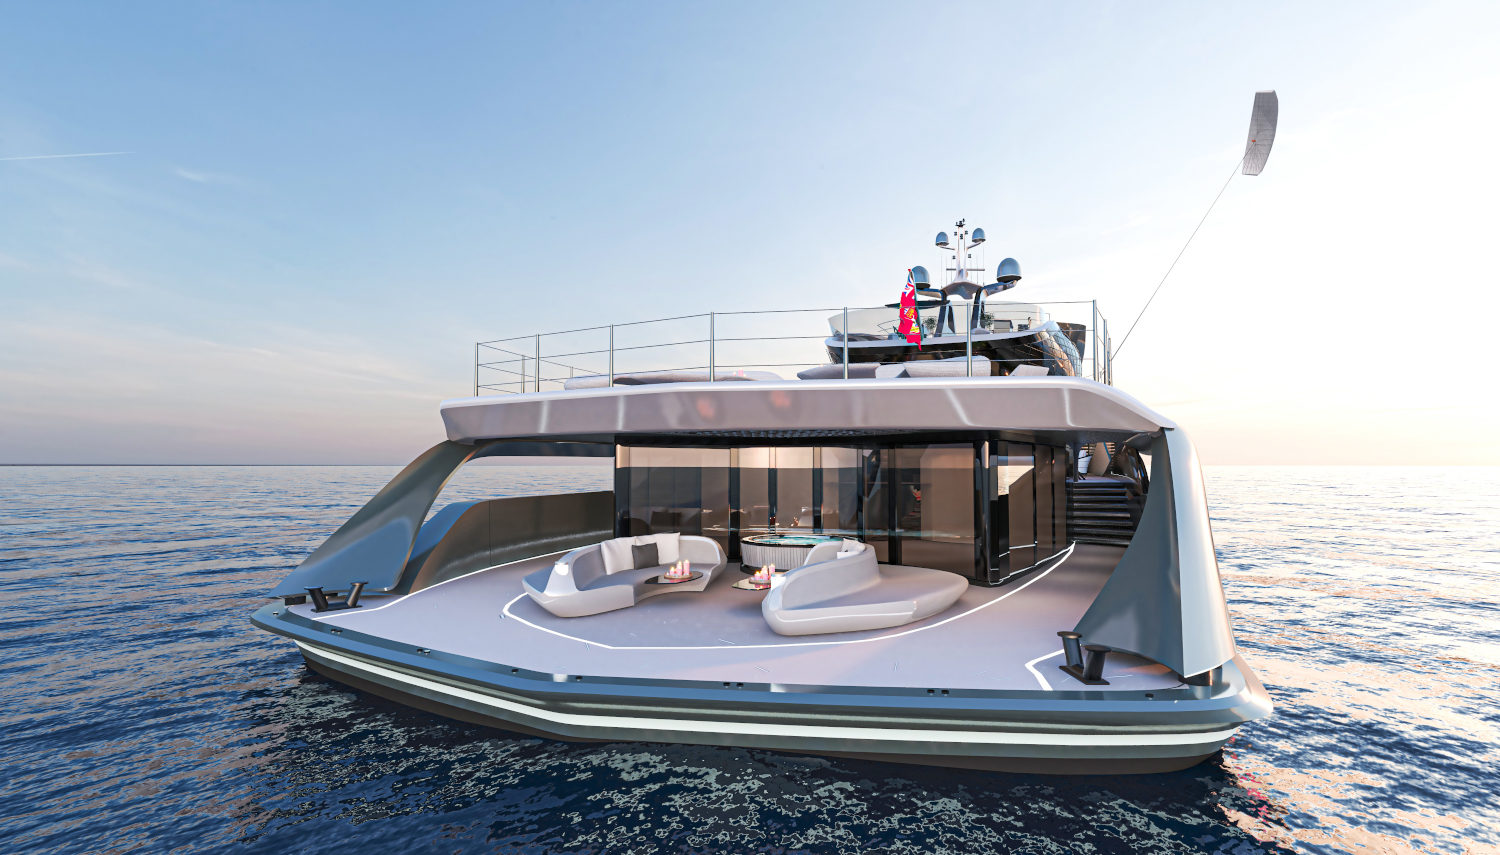 Superiate conceito Futura Vripack - boat shopping